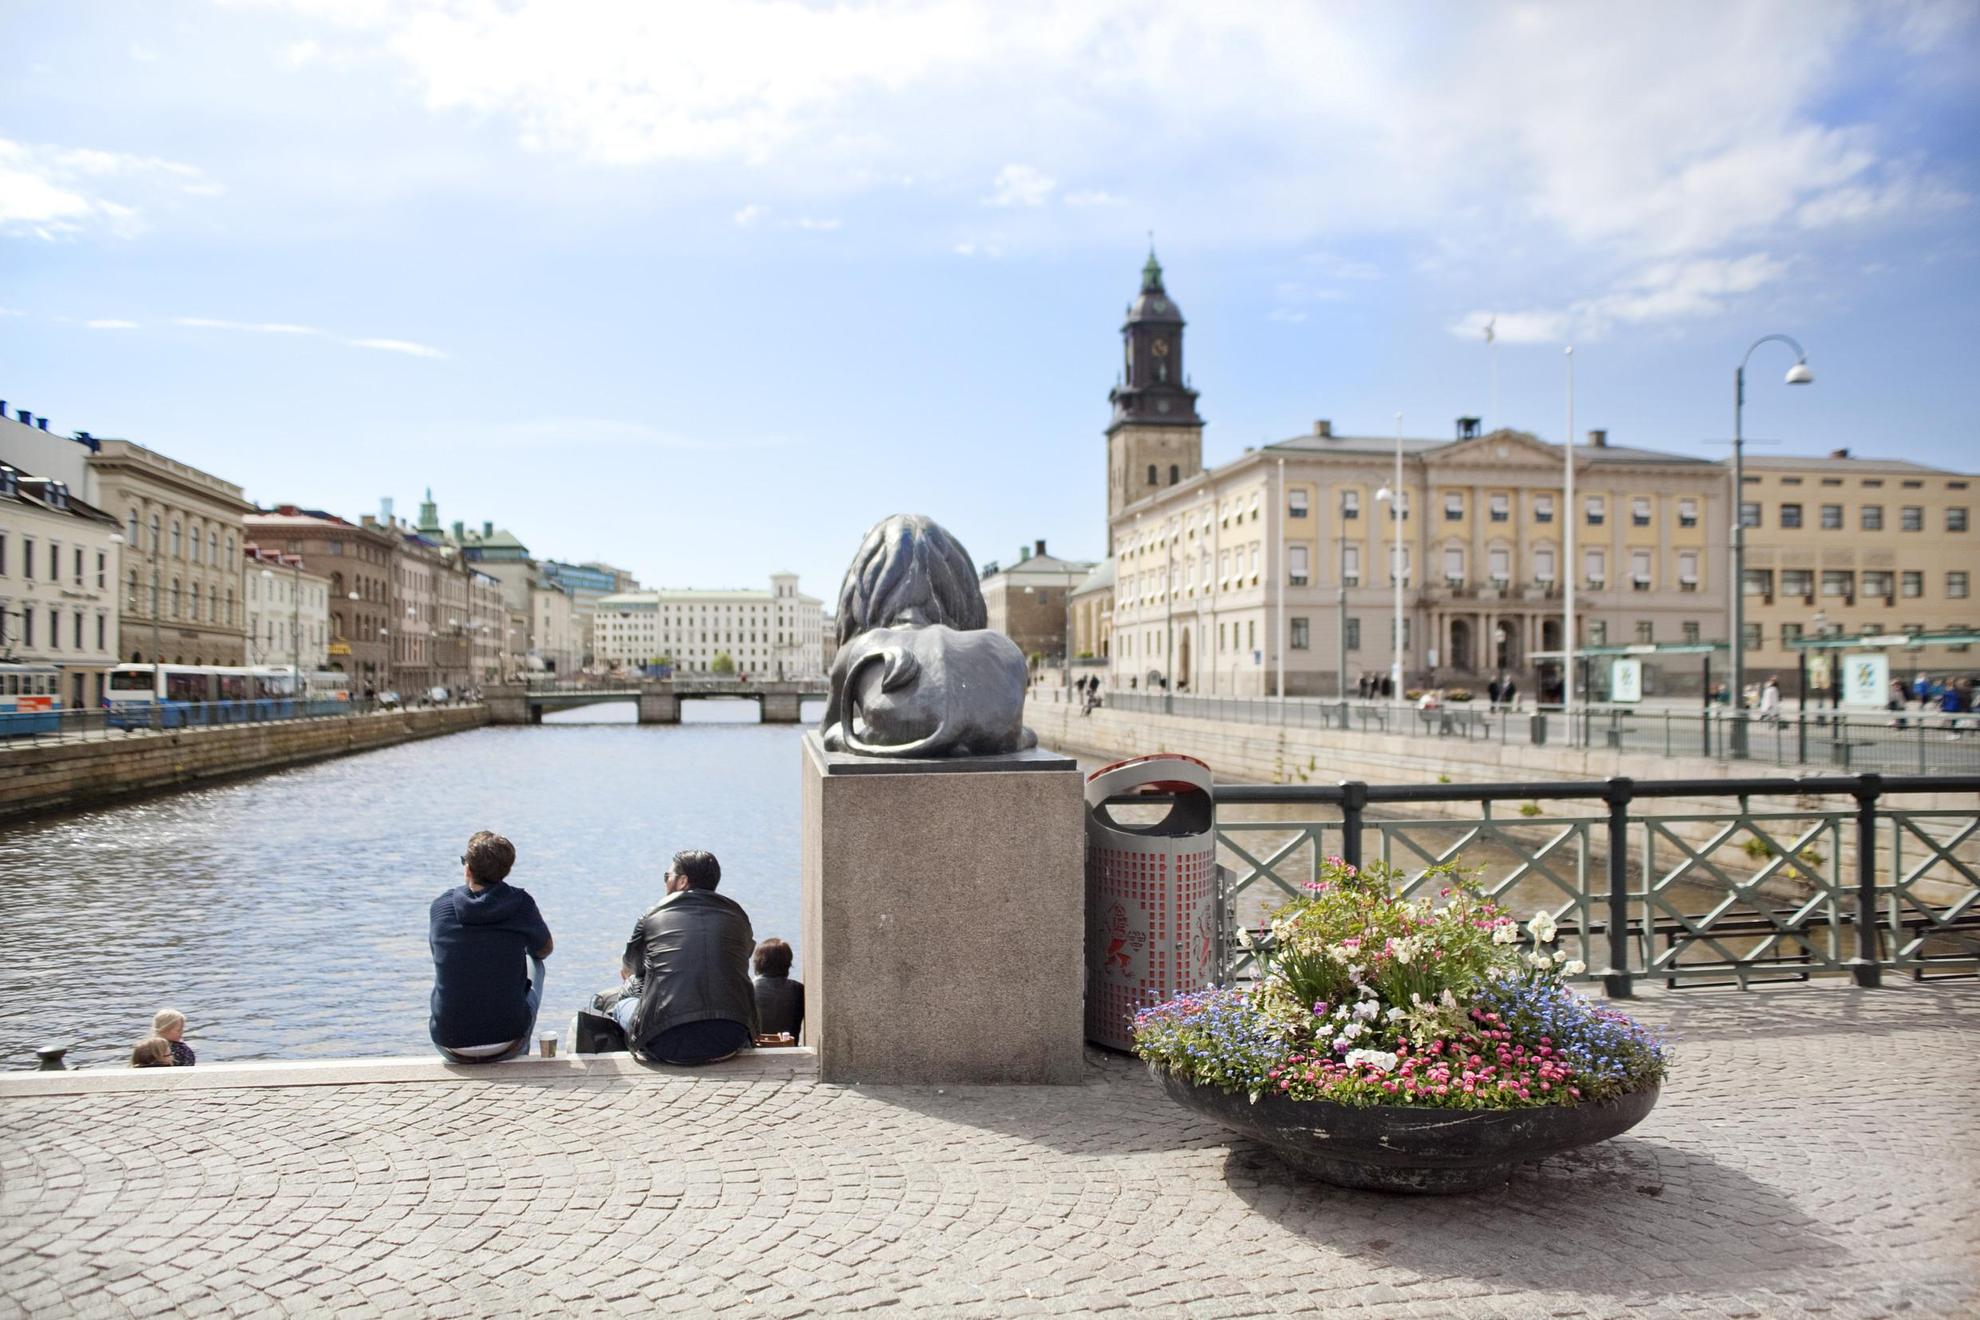 Twee mensen zitten op Lejontrappan in Brunnsparken. Op de achtergrond is het stadhuis van Göteborg zichtbaar.